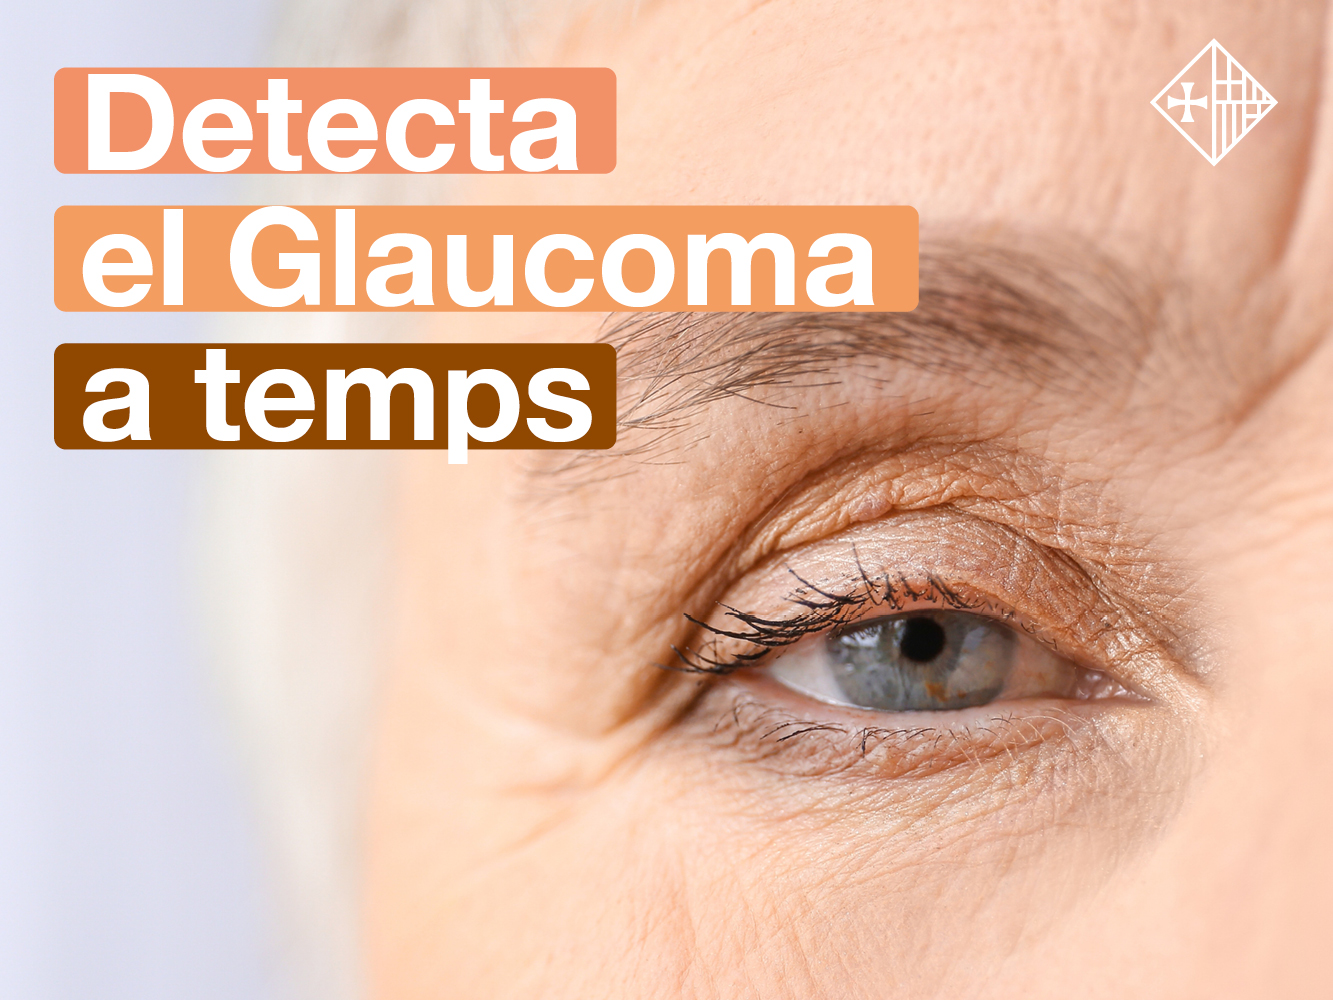 Vine a Sant Pau per visitar-te i detecta el glaucoma a temps